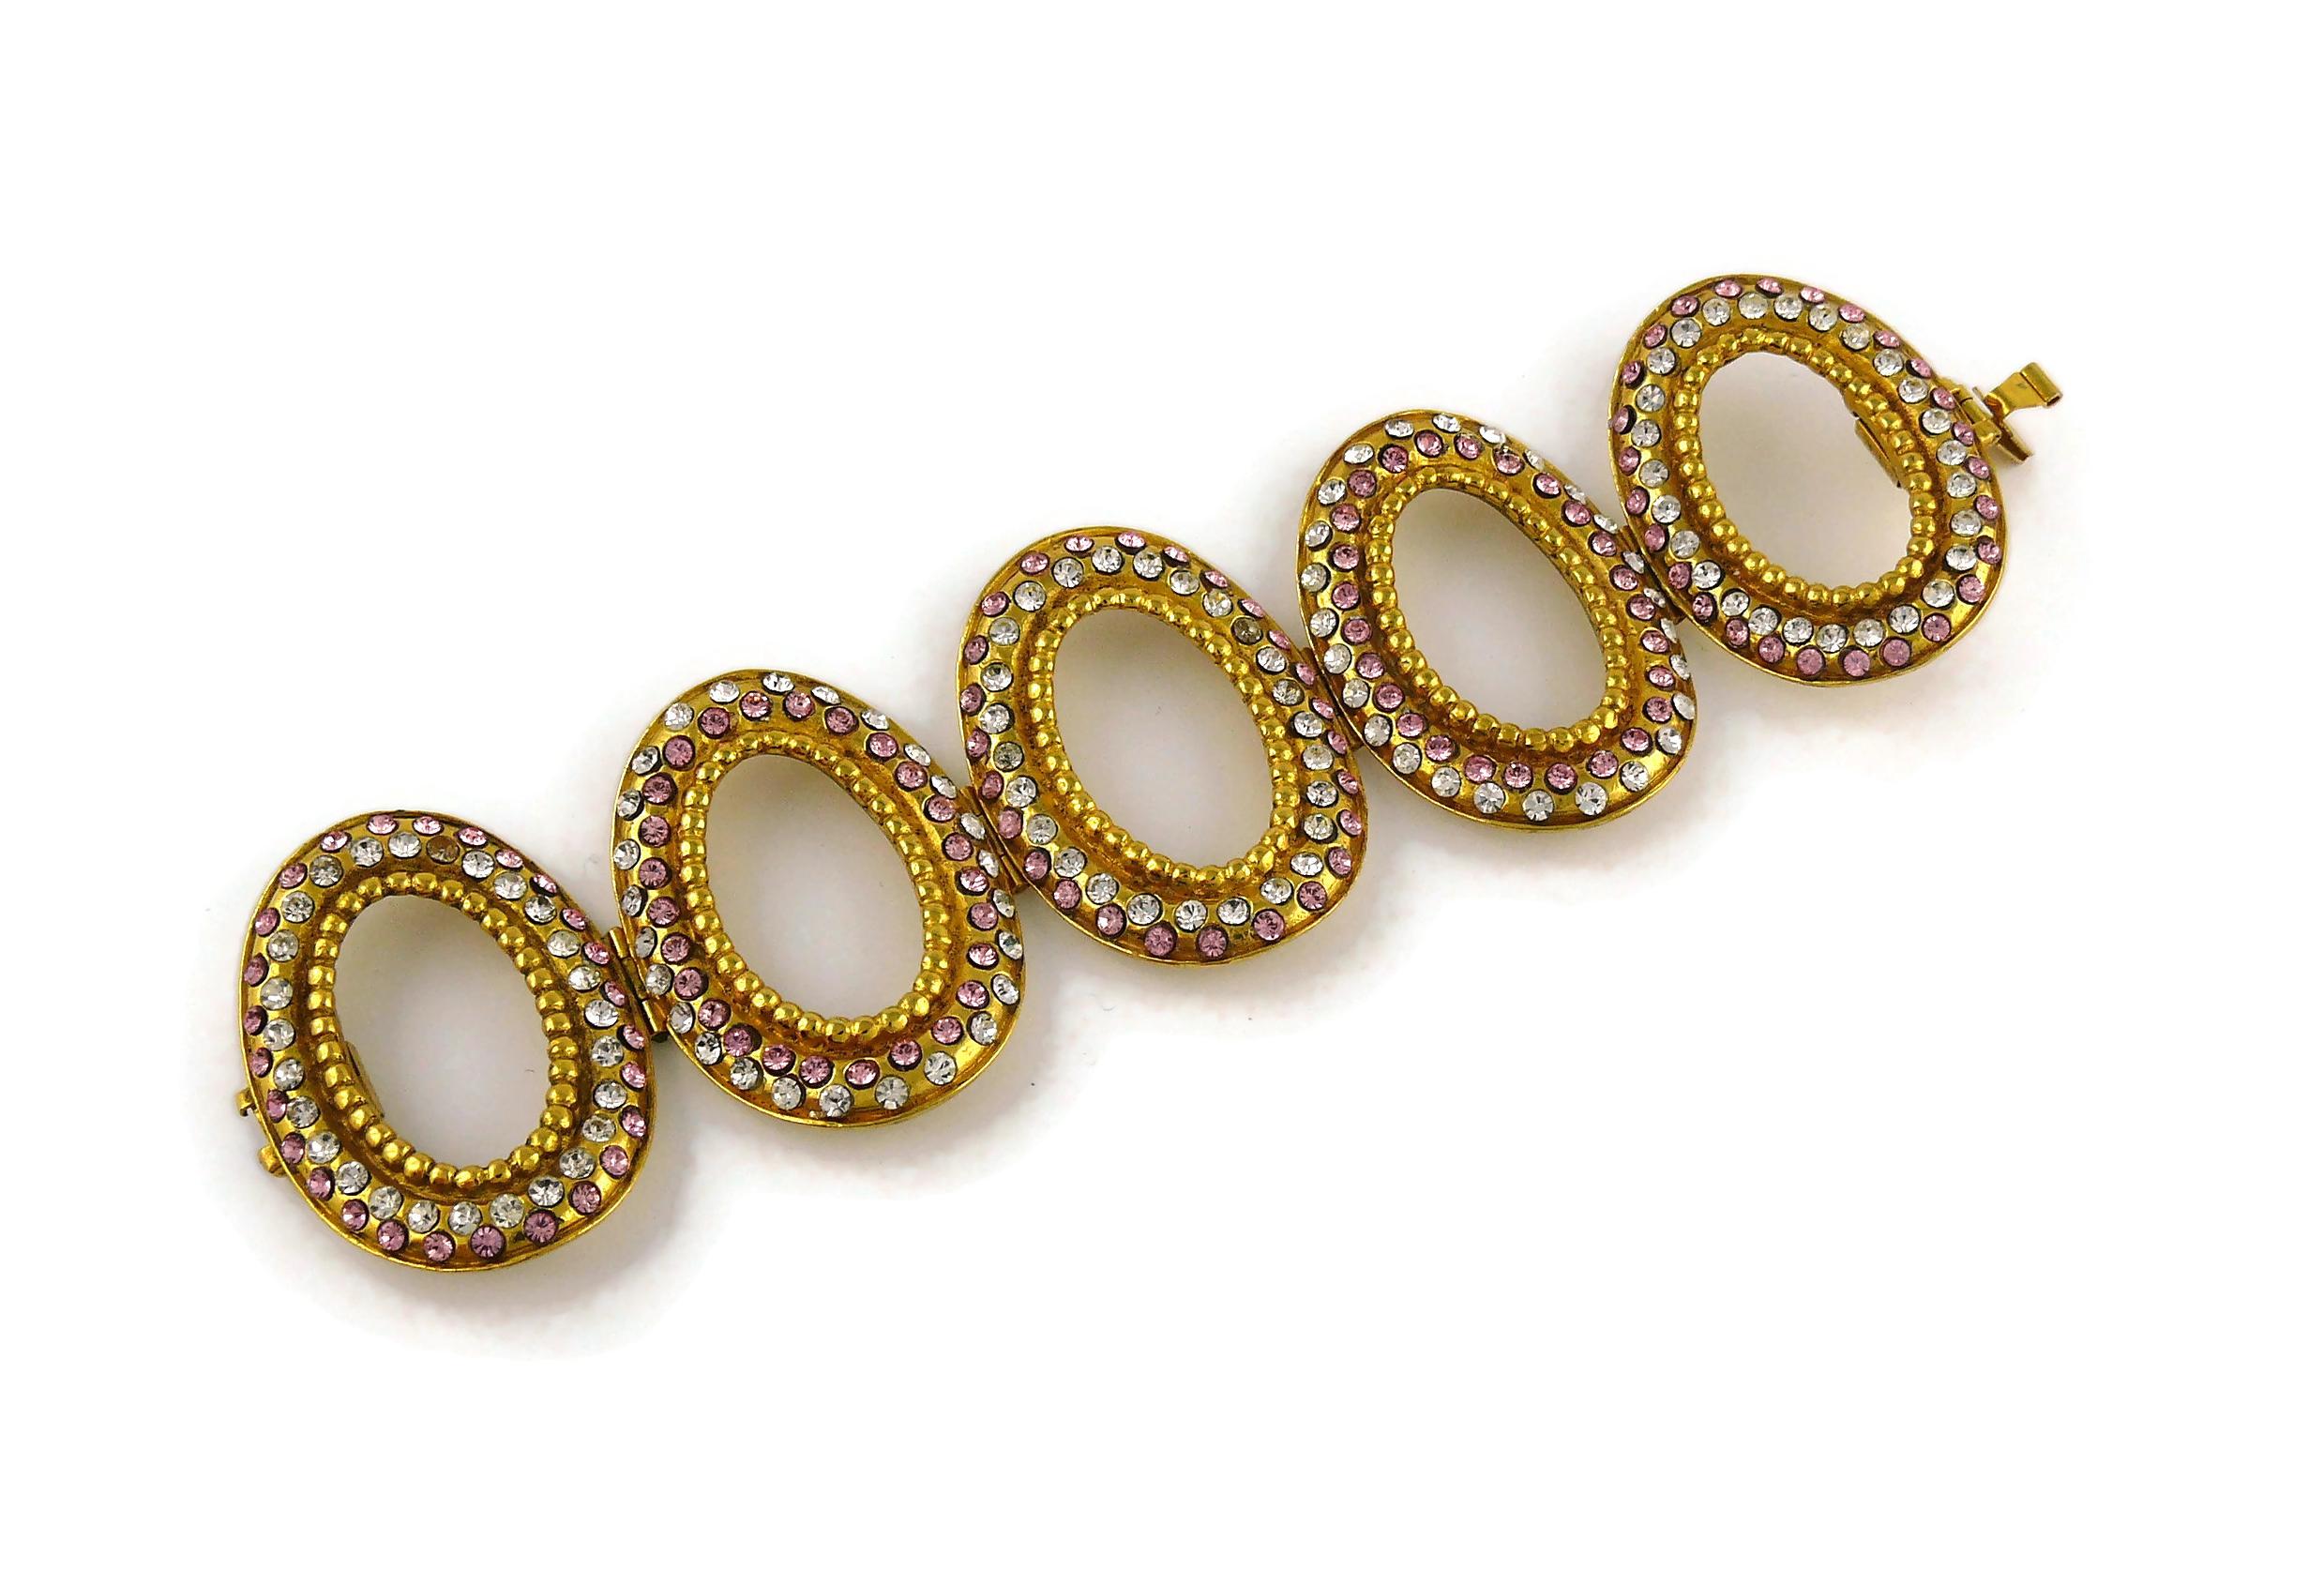 Christian Dior Boutique Vintage Jeweled Oval Link Bracelet 2